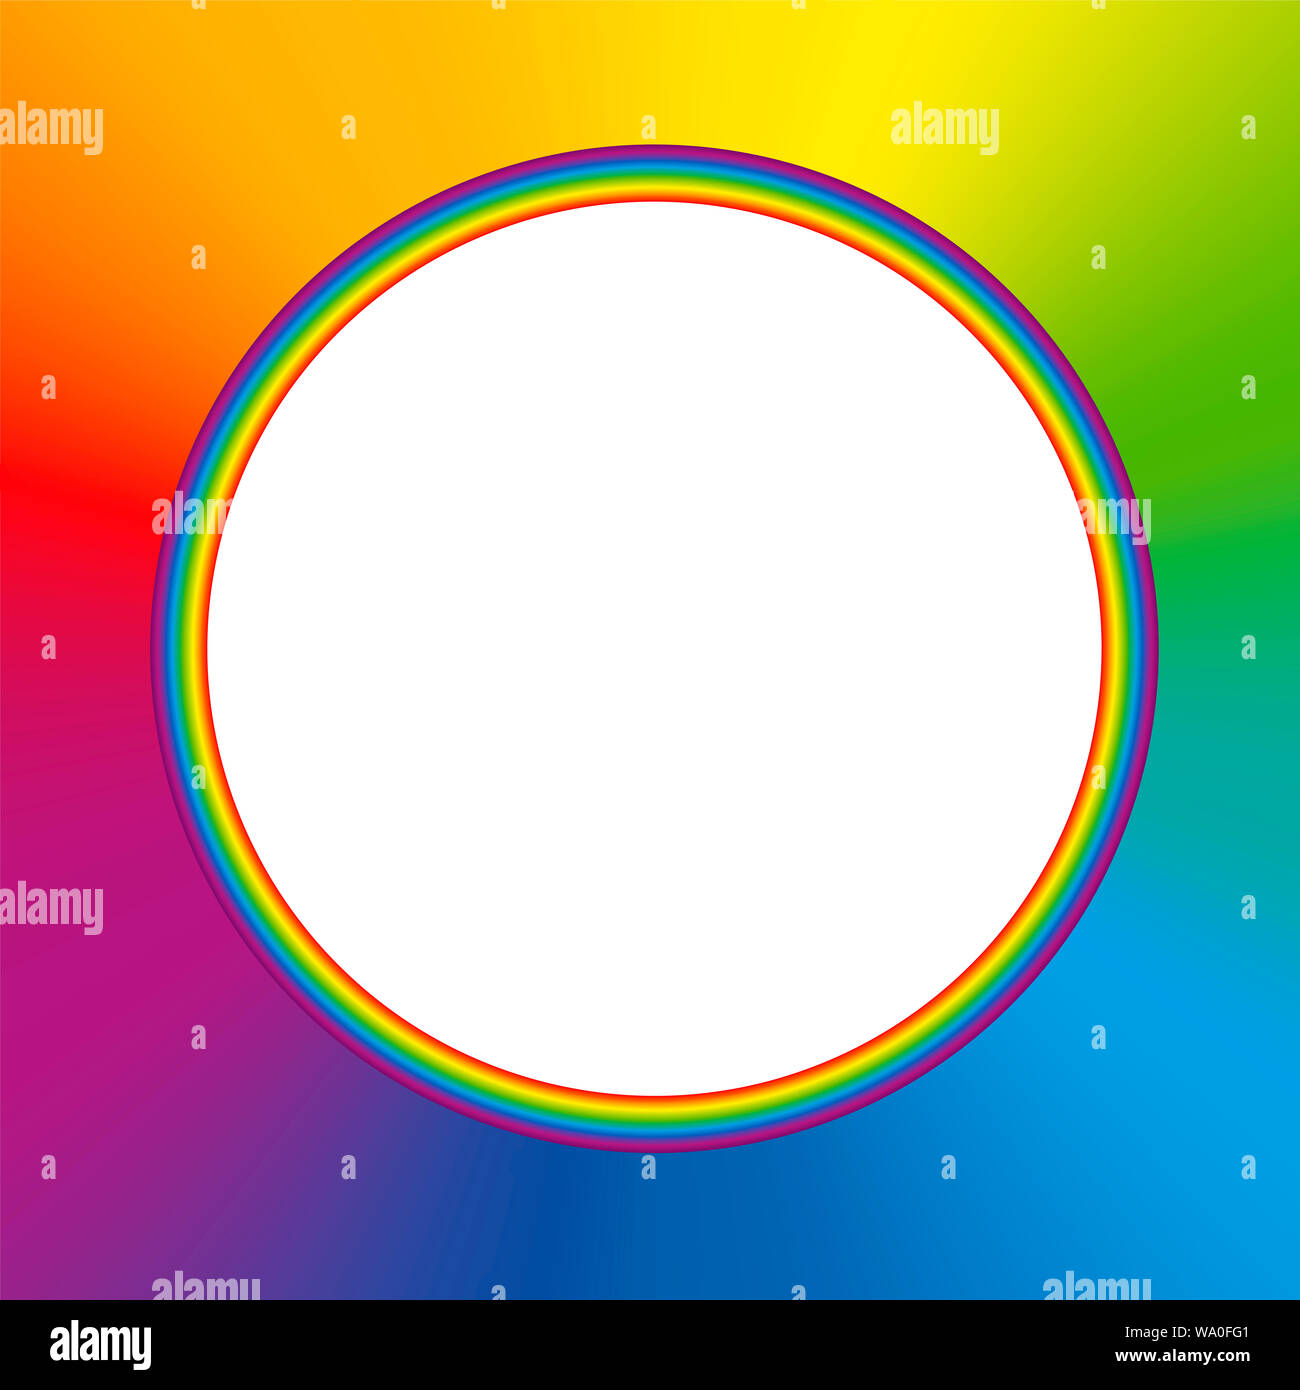 Regenbogenfarbige runden Rahmen mit bunten Regenbogen Farbverlauf Hintergrund und weiße leere Mitte. Stockfoto